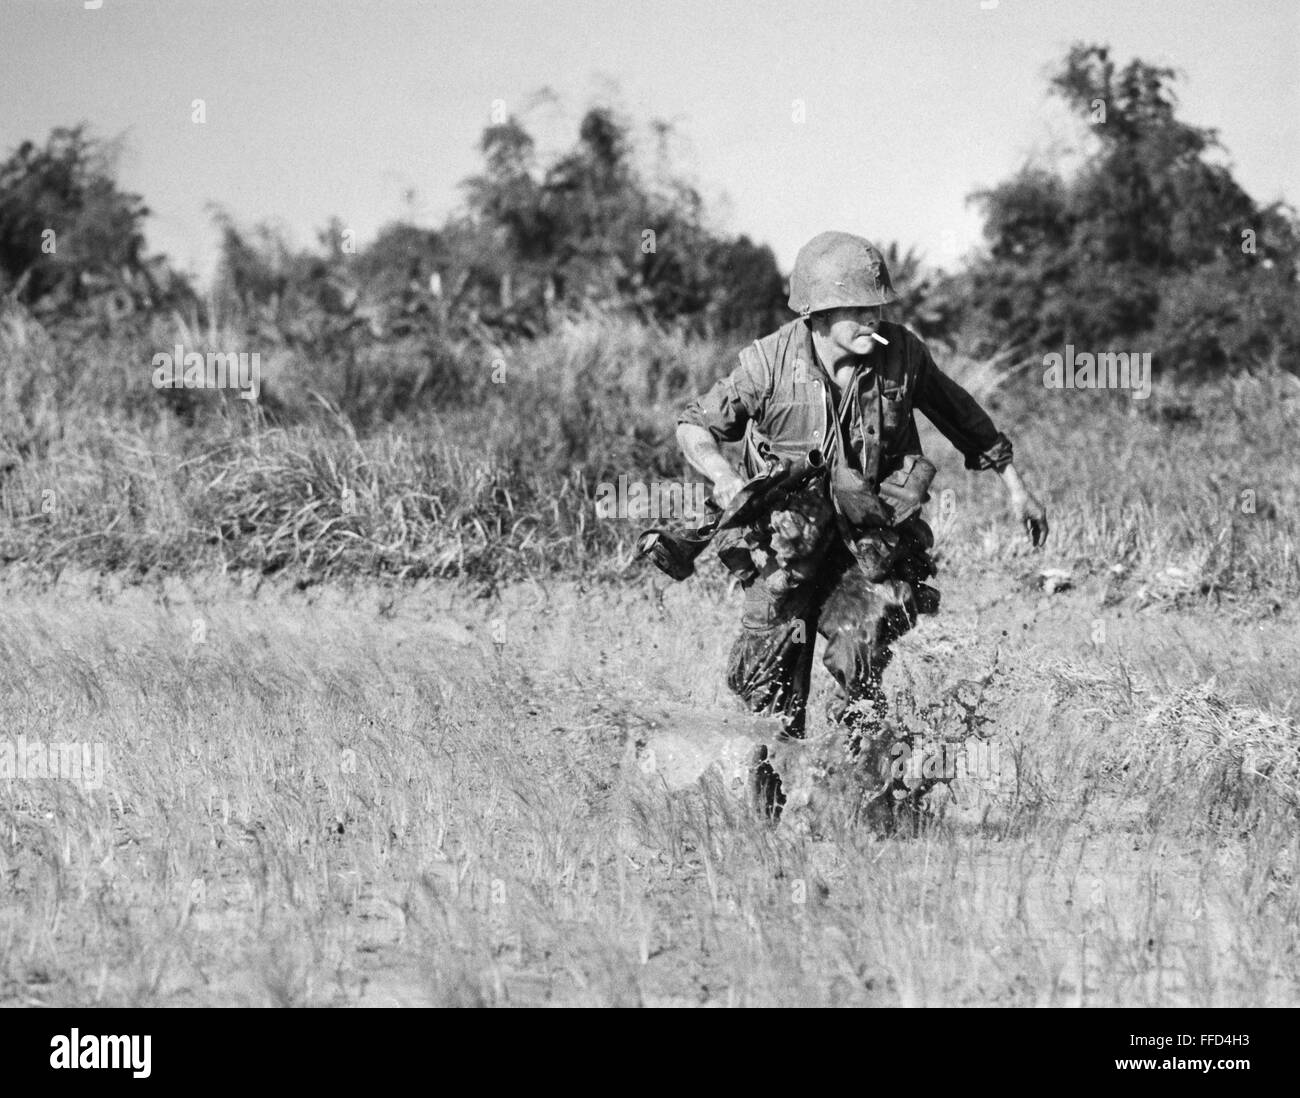 VIETNAM WAR: RIFLEMAN./nU.S. Marine rifleman pinned down in a rice paddy near Hoi An, South Vietnam, December 1967. Stock Photo